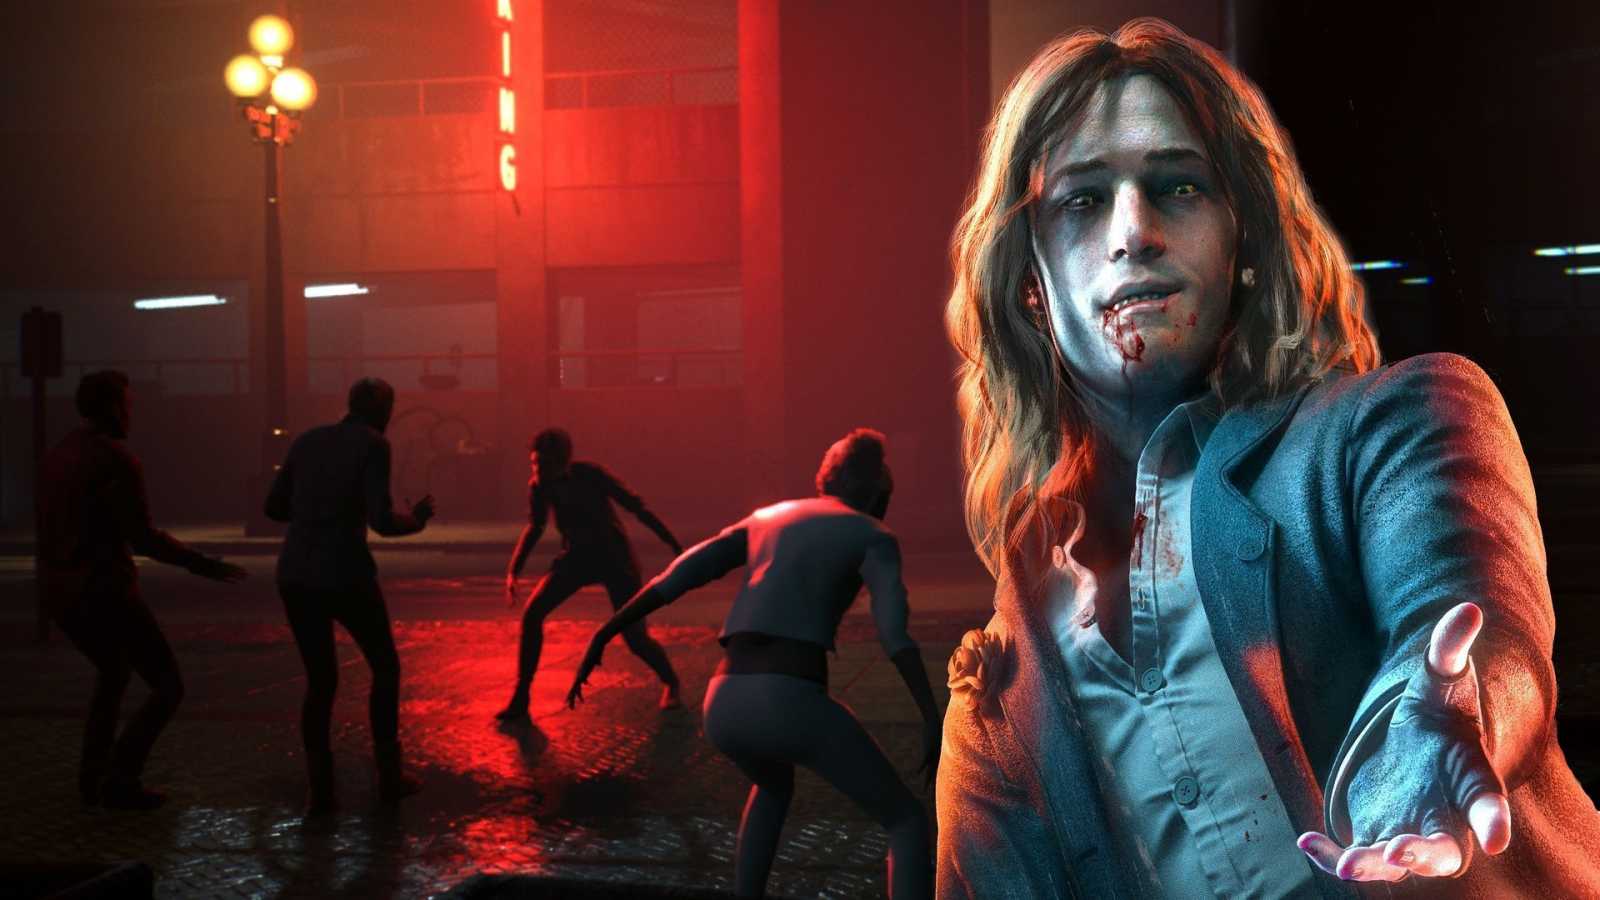 Paradox v září odhalí nové vývojáře Bloodlines 2 a bude i vracet peníze. Ne však kvůli zrušení. Obsah fyzických edic se měl prý výrazně změnit